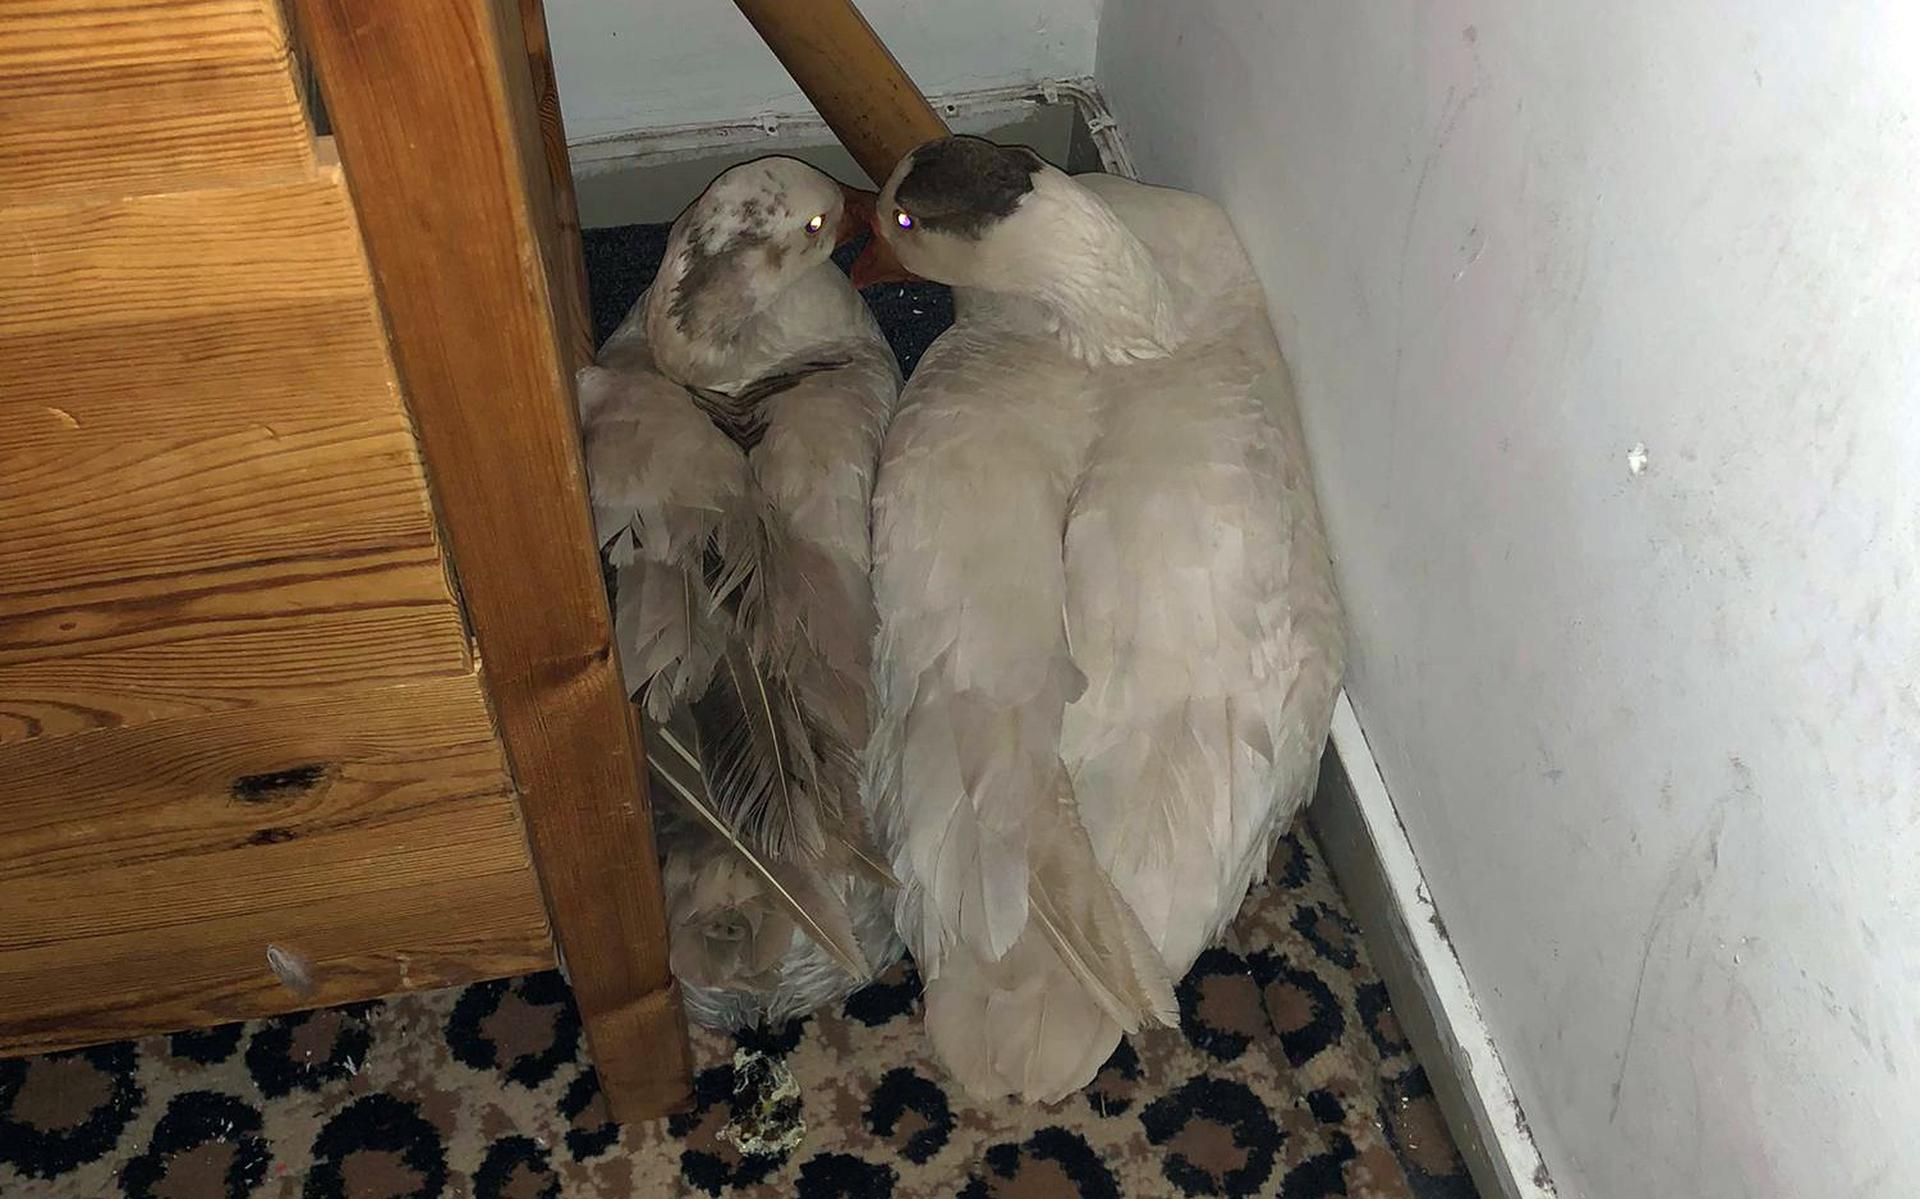 De ganzen zaten verstopt in een hoekje